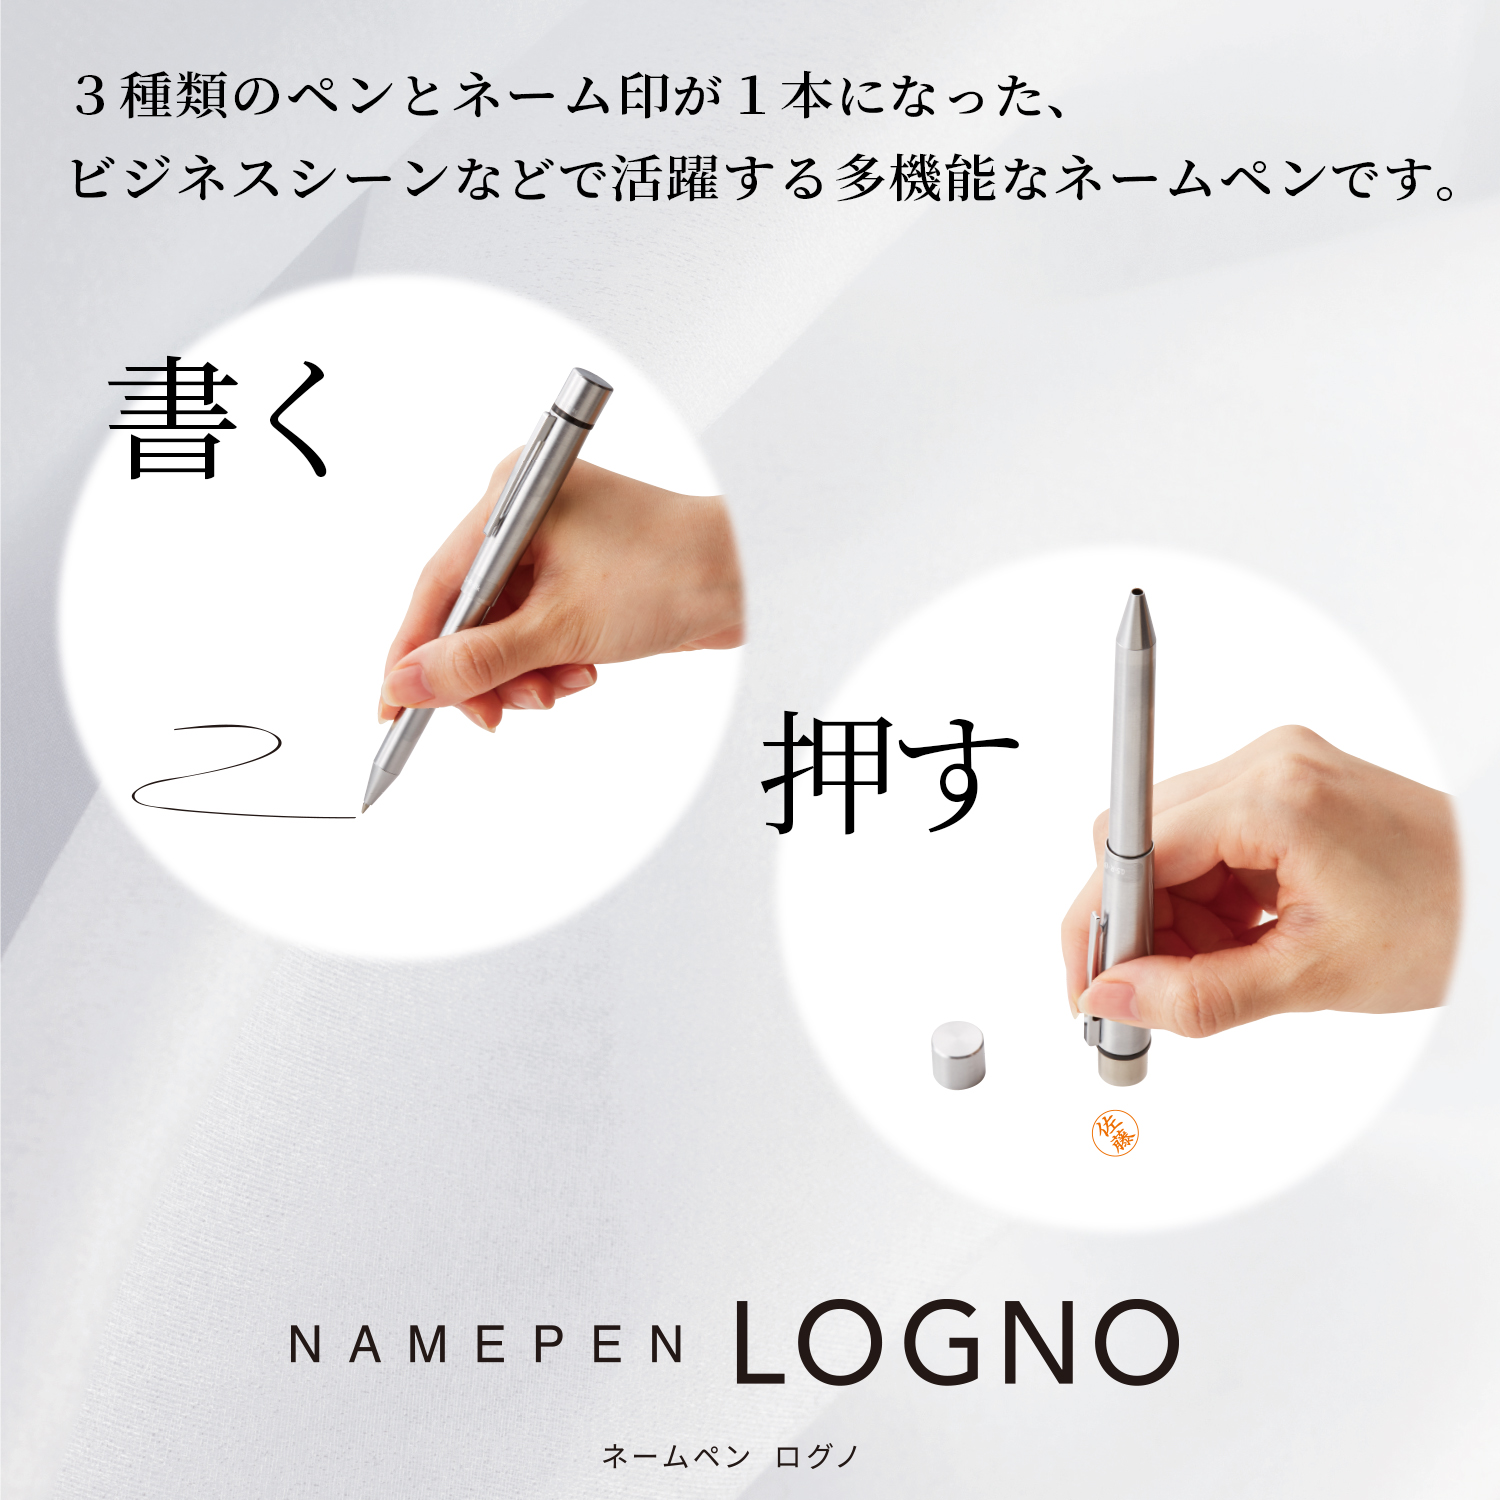 ネームペン ログノ【既製品】_2